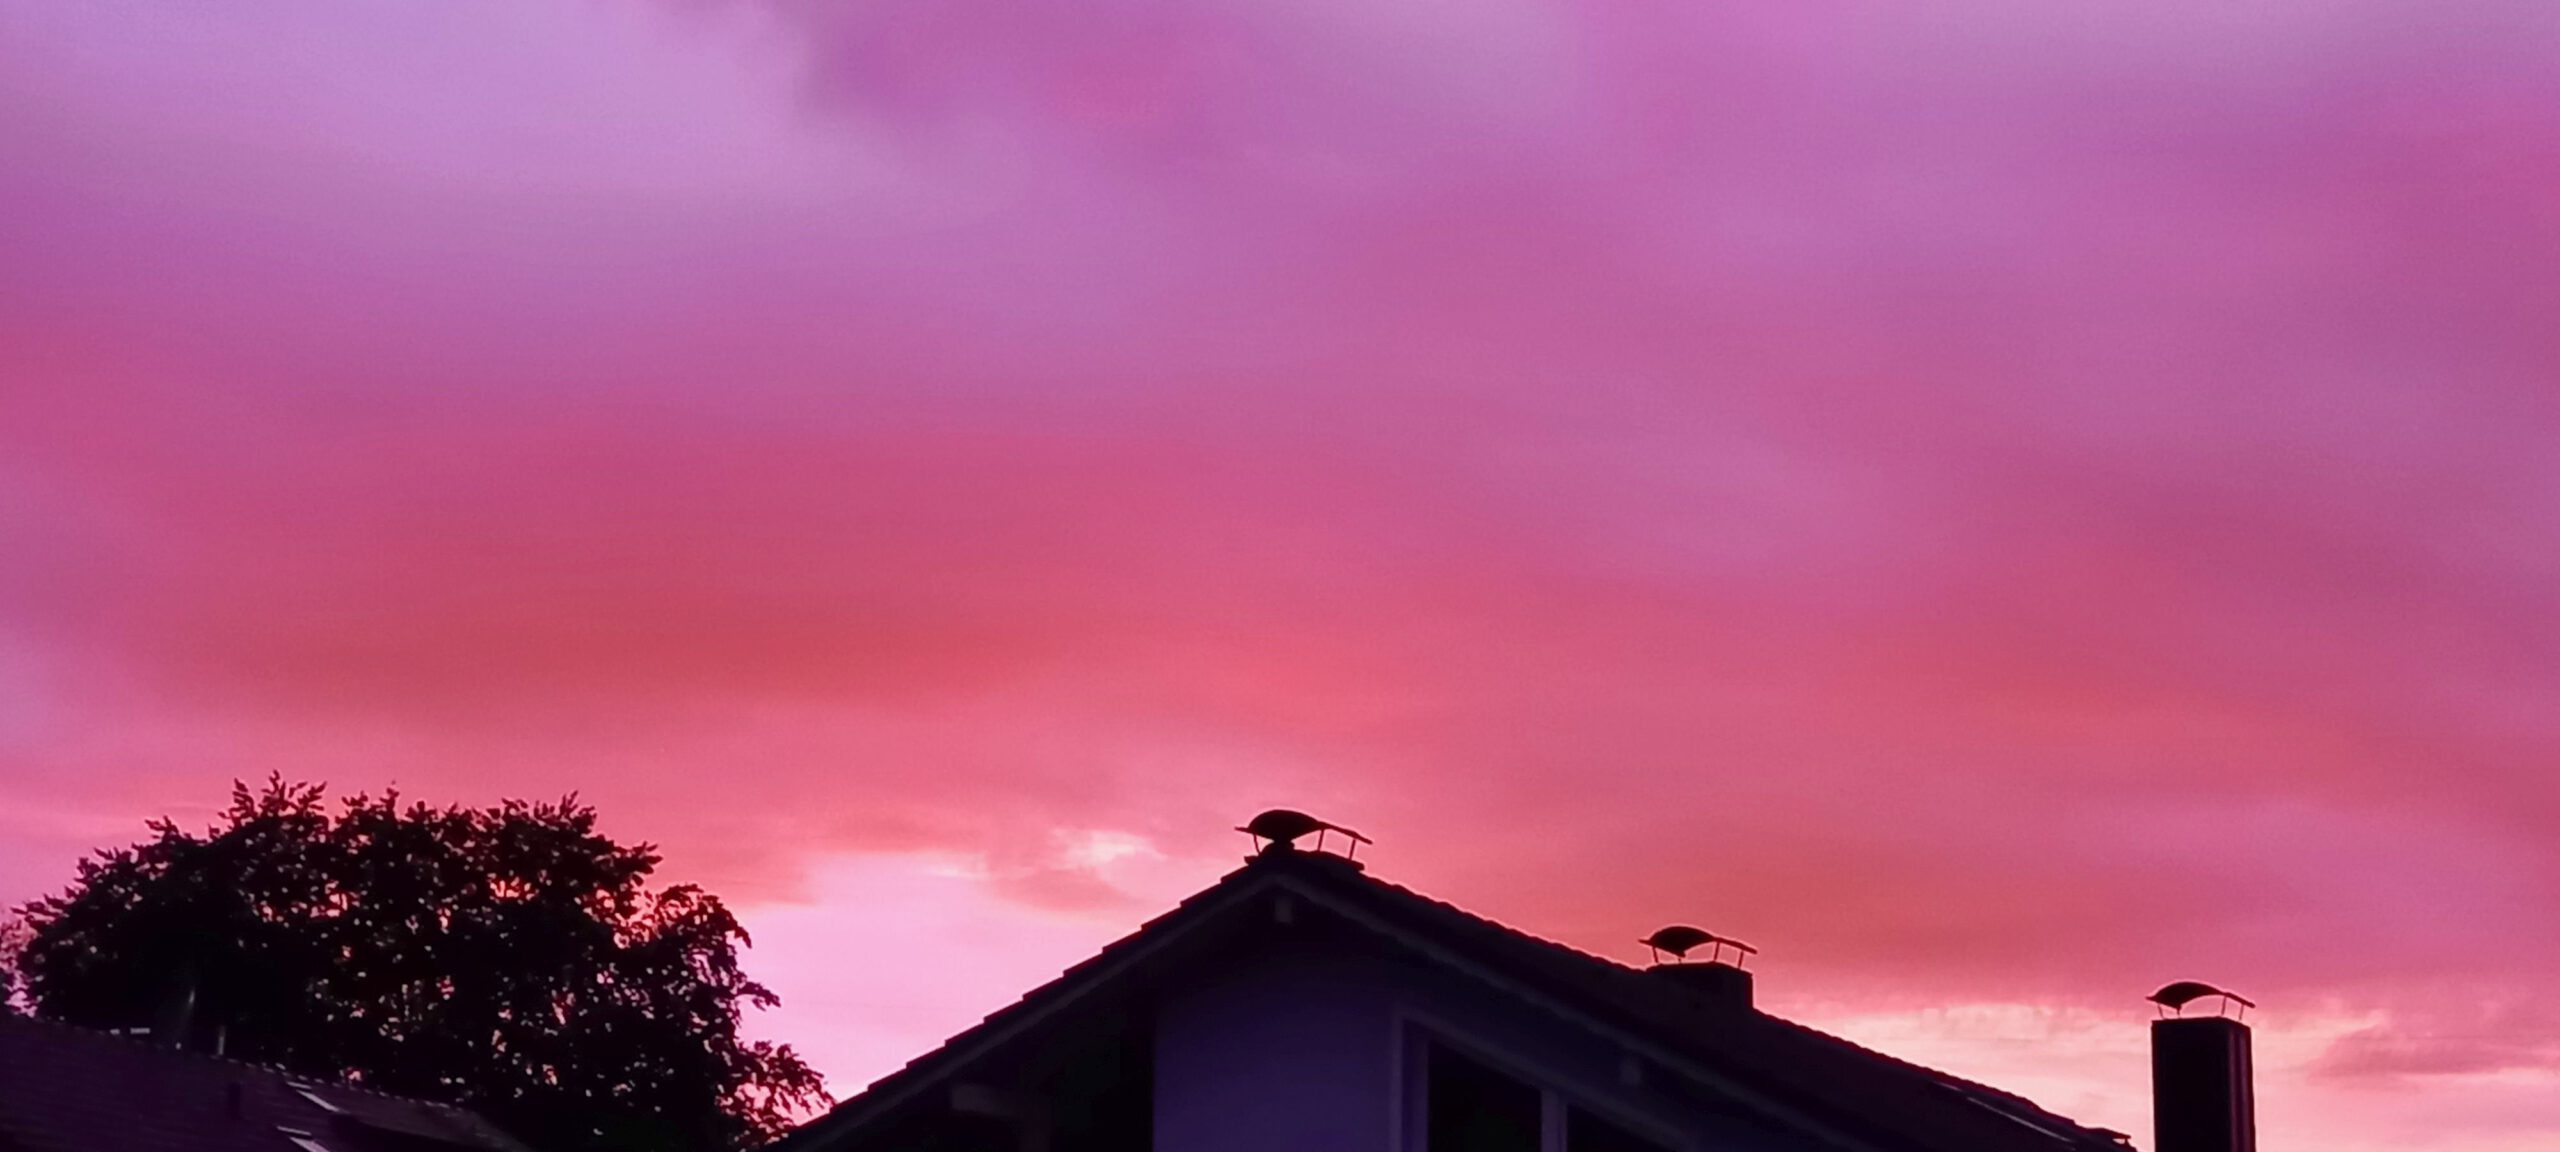 Sonnenuntergang rosa über Dach hinweg fotografiert